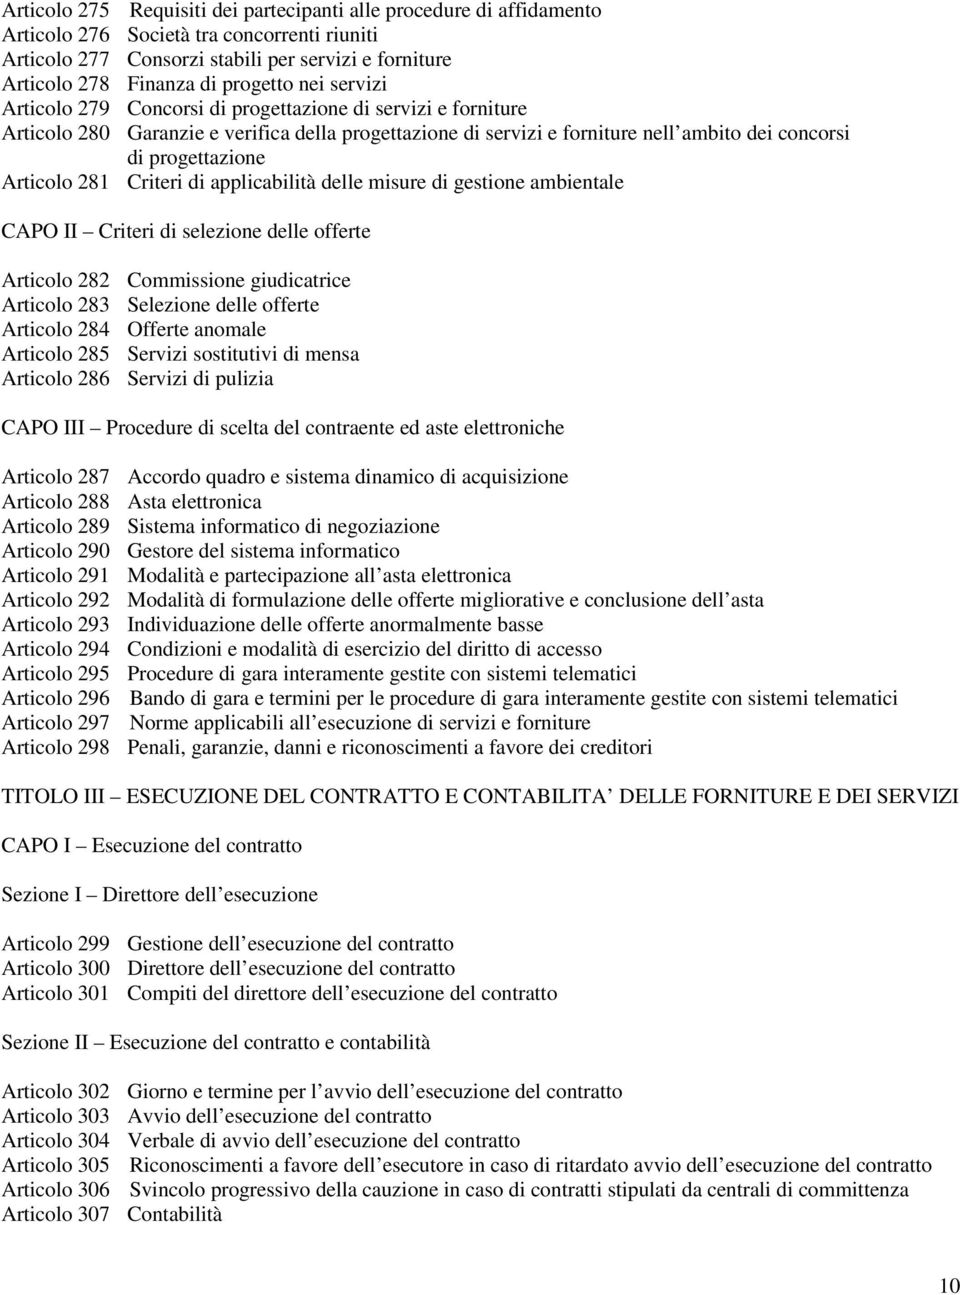 progettazione Articolo 281 Criteri di applicabilità delle misure di gestione ambientale CAPO II Criteri di selezione delle offerte Articolo 282 Commissione giudicatrice Articolo 283 Selezione delle